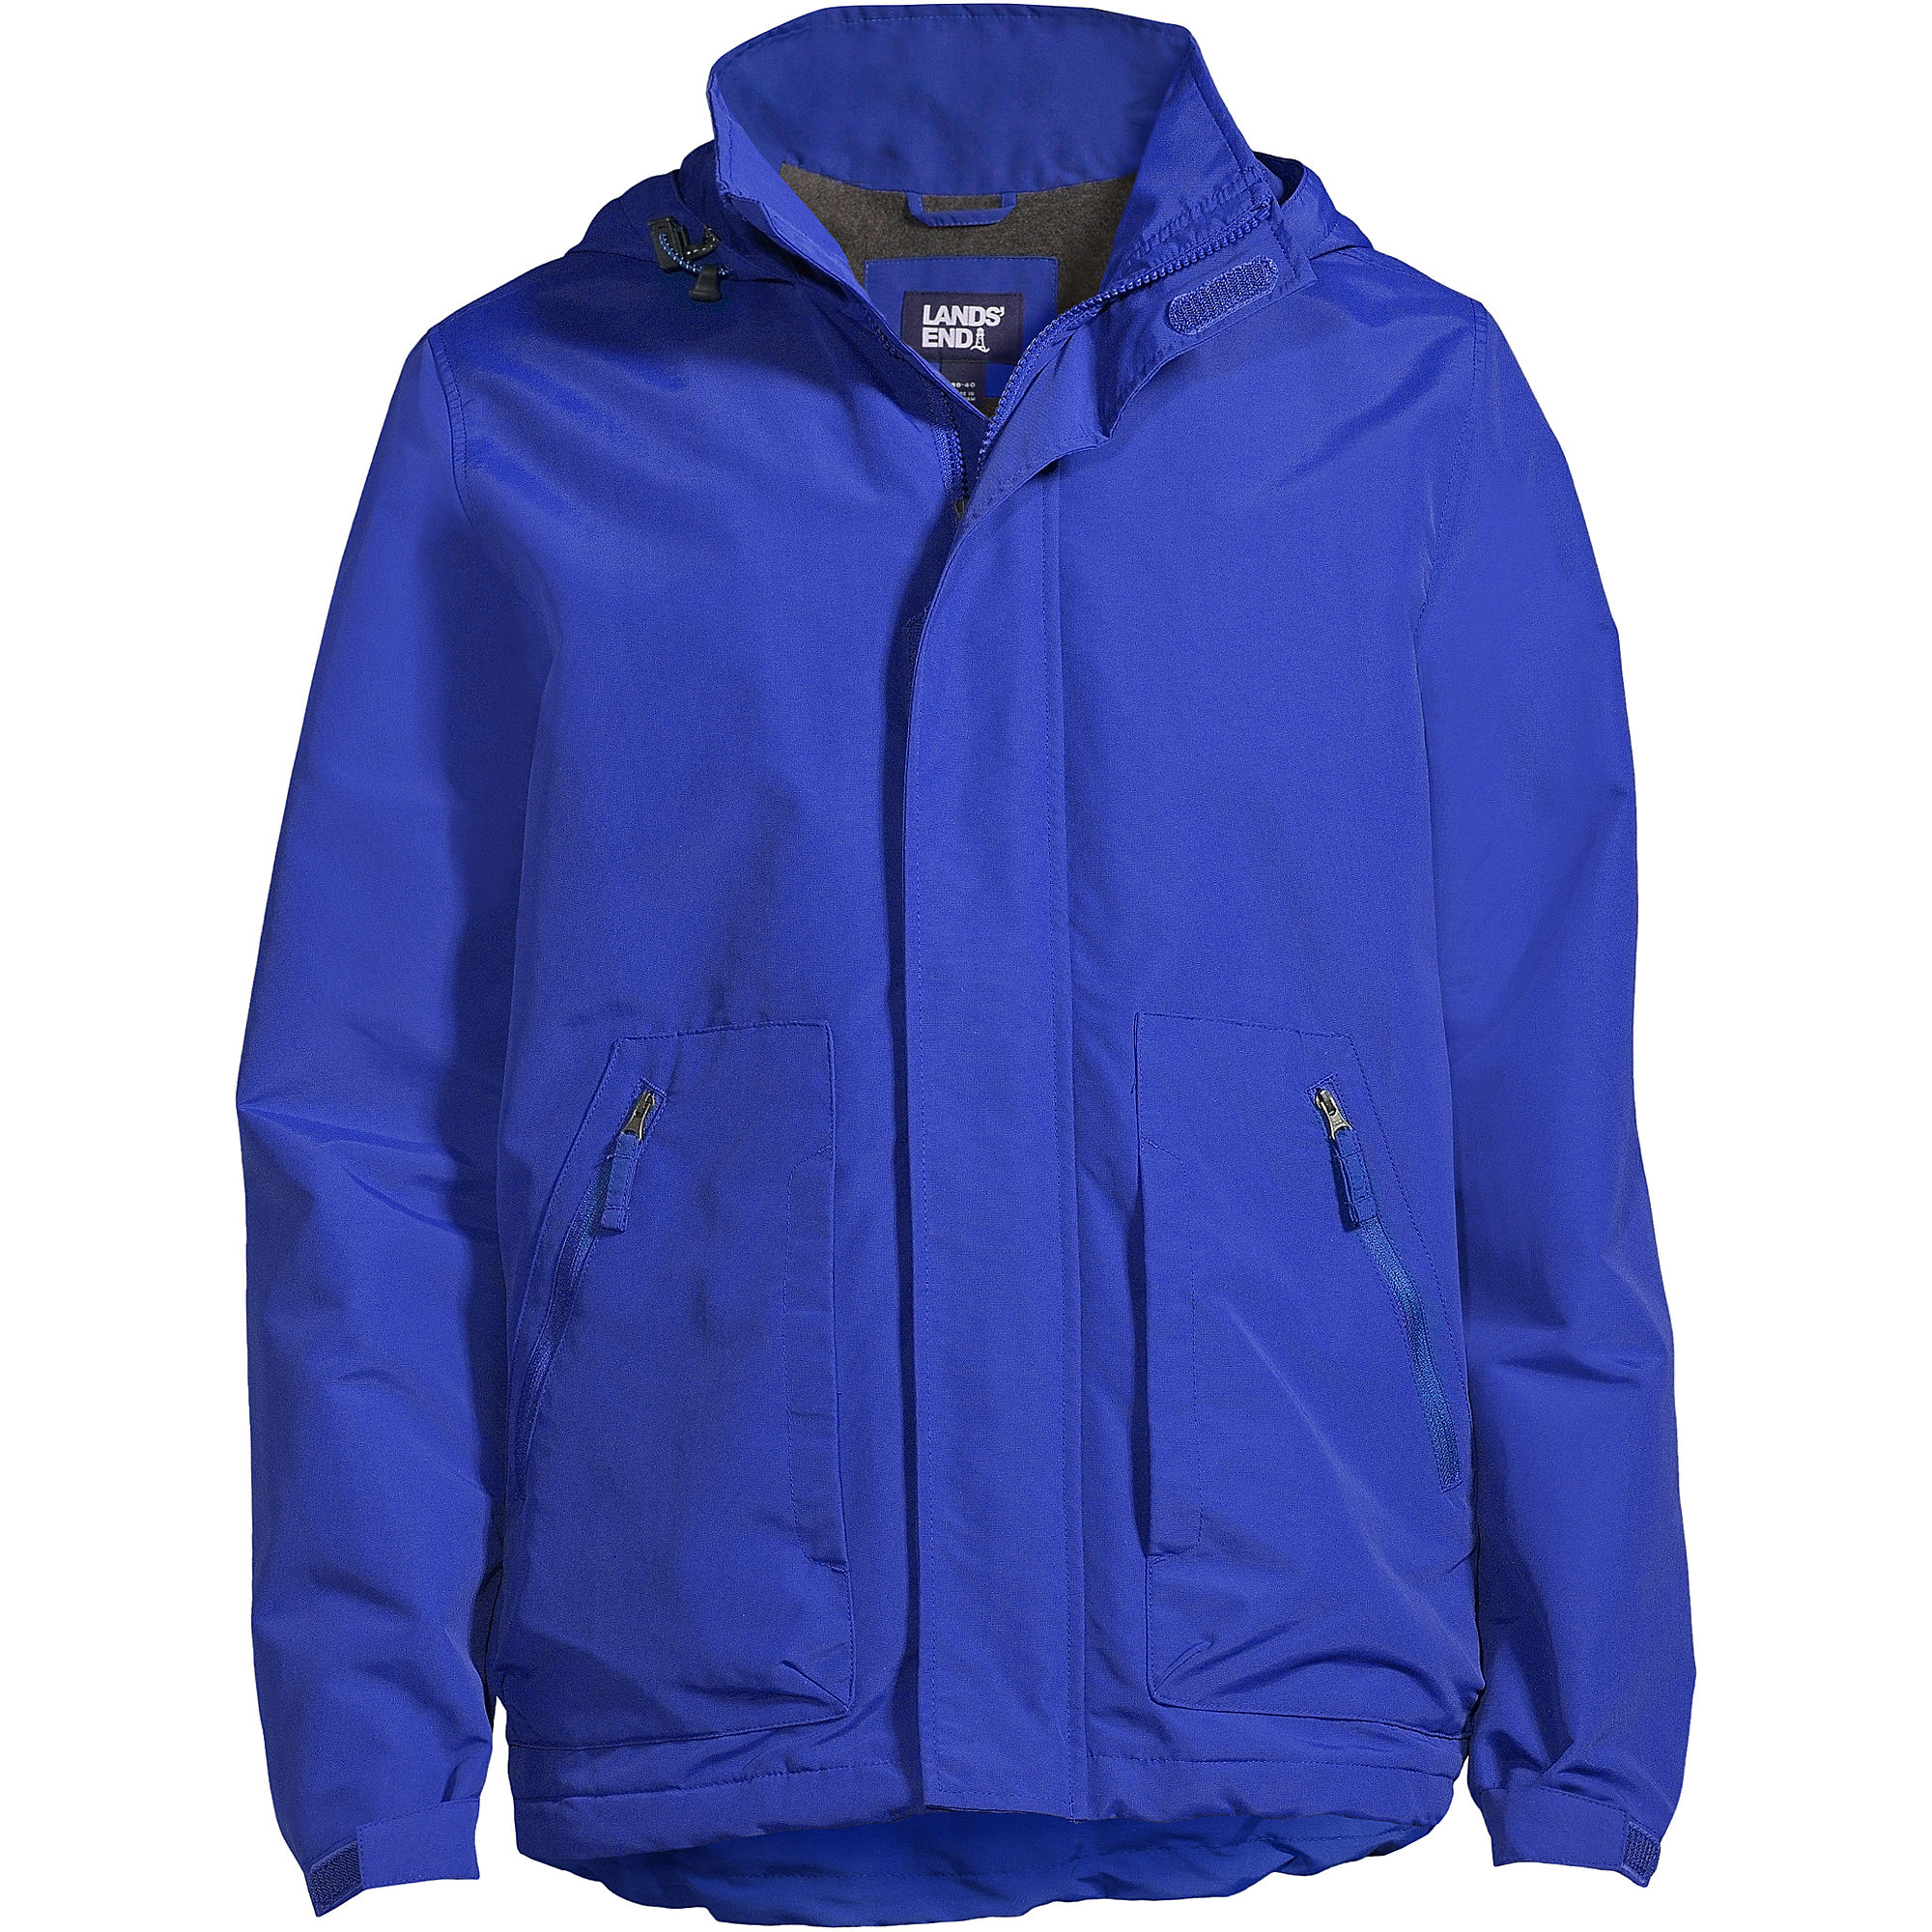 Lands End Men's Big Outrigger Fleece Lined Jacket (Dark Cobalt Blue)